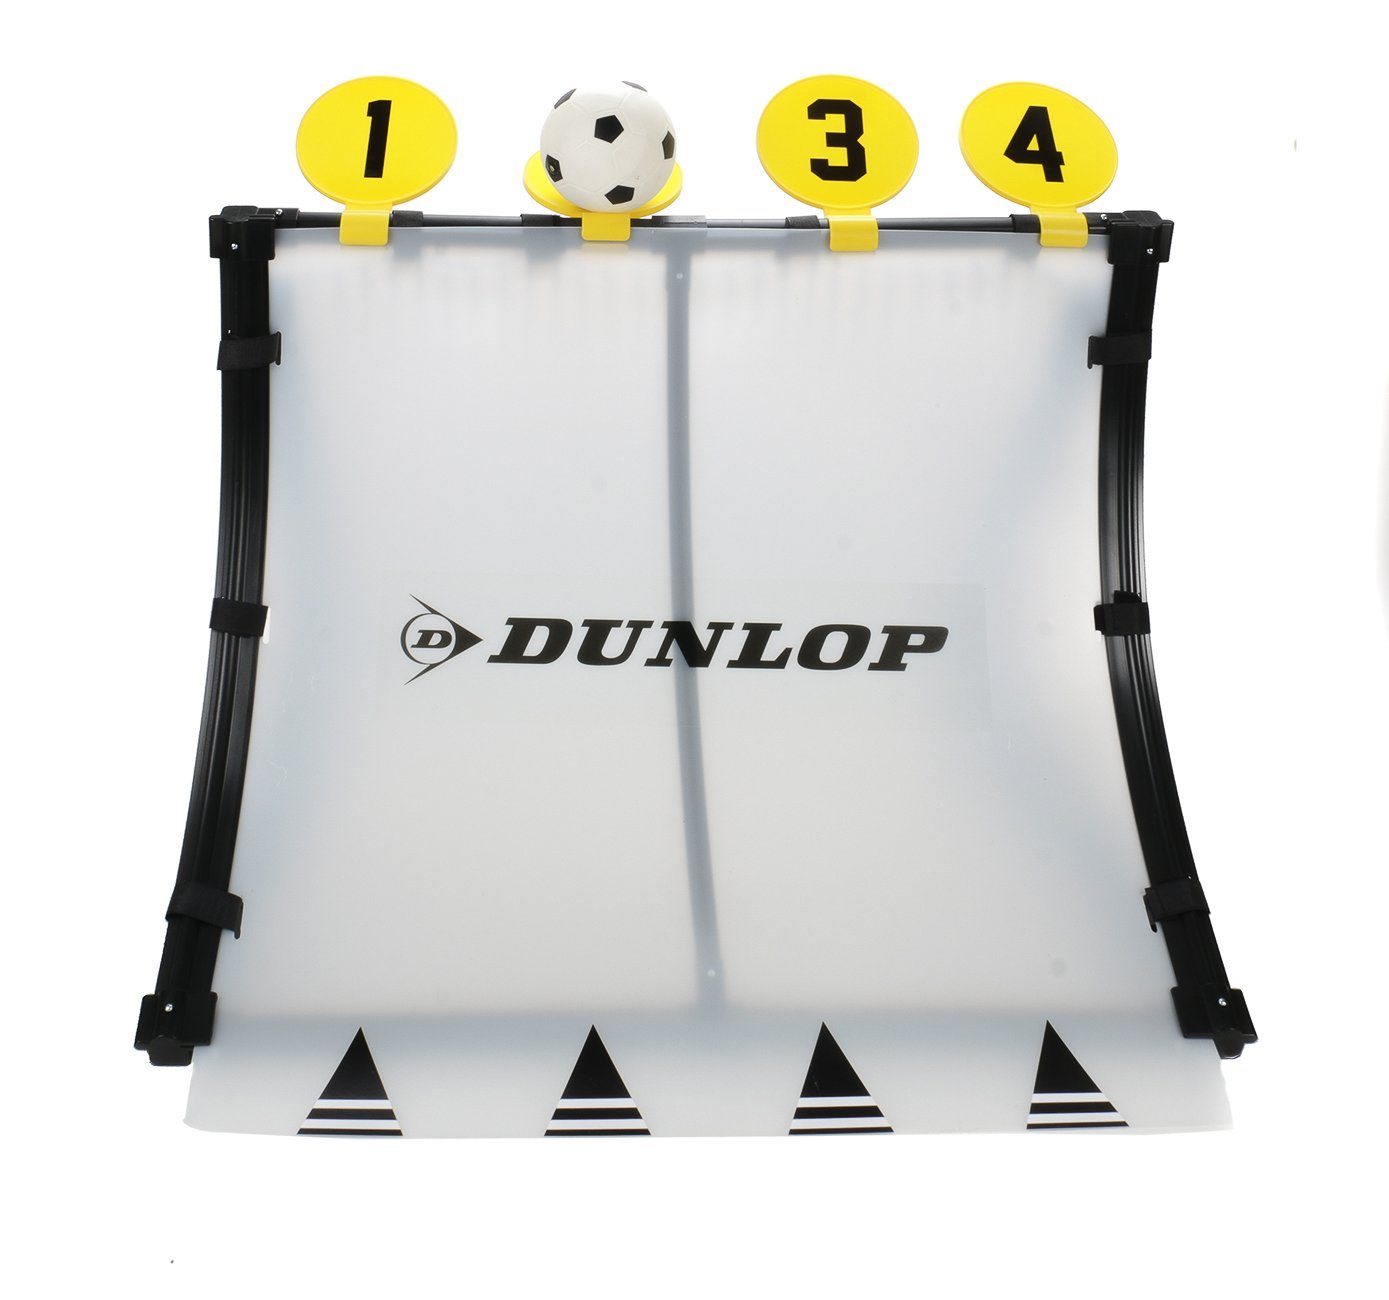 Dunlop Fußballtor »4-in-1 Fußballtrainingscenter für Kinder mit Ball« ( Fussballtor mit Rebound-Platte, 4 Zielscheiben, Ballpumpe mit Adapter),  leichte Steck-Klick-Montage, Heringe, Größe ca. 75 x 58 x 79 cm